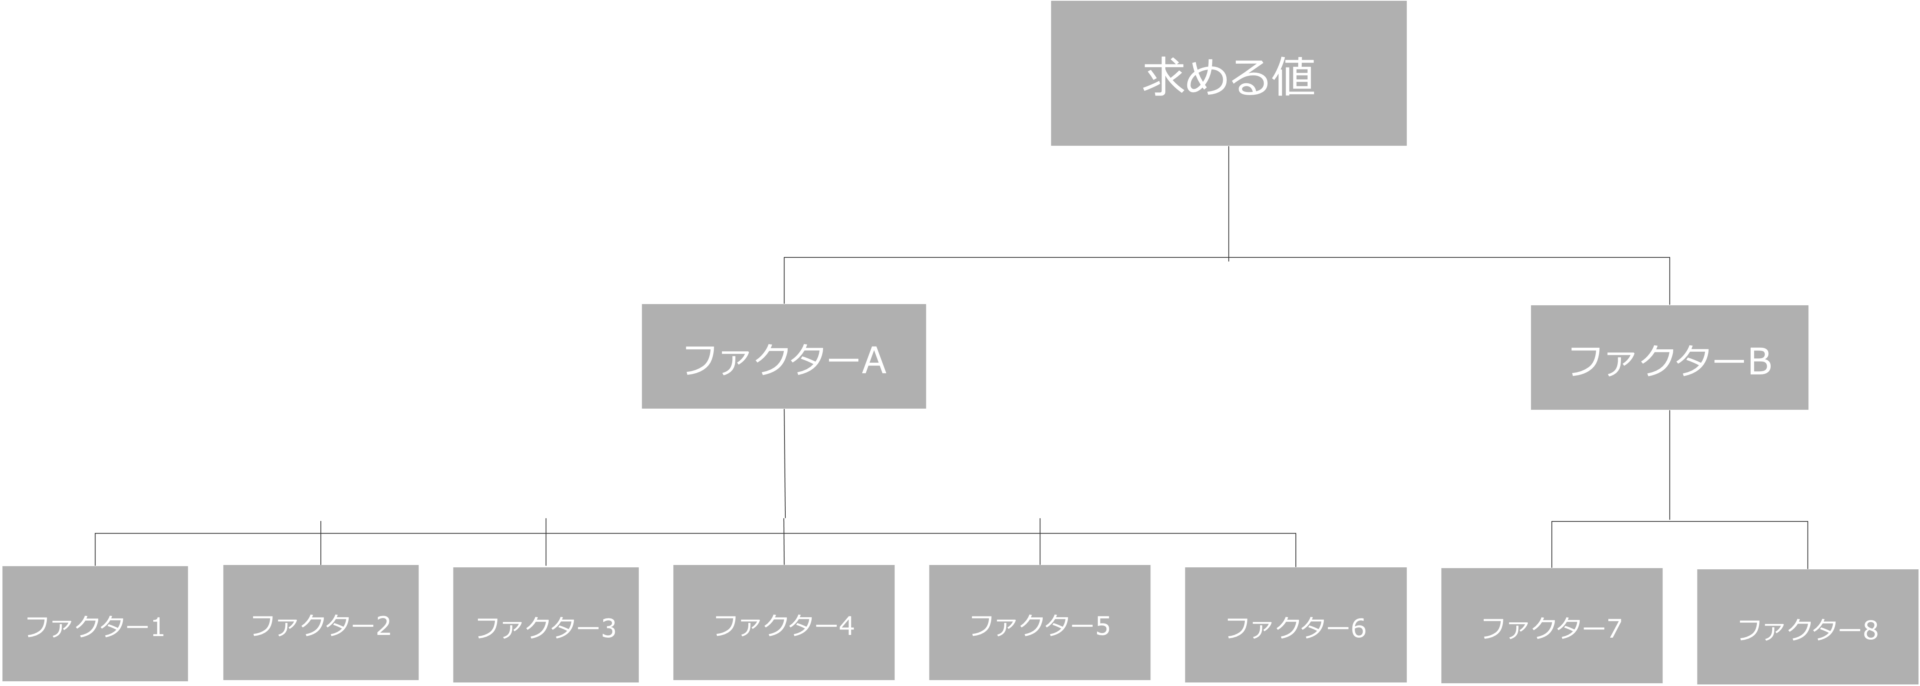 フェルミ推定における構造化のイメージ